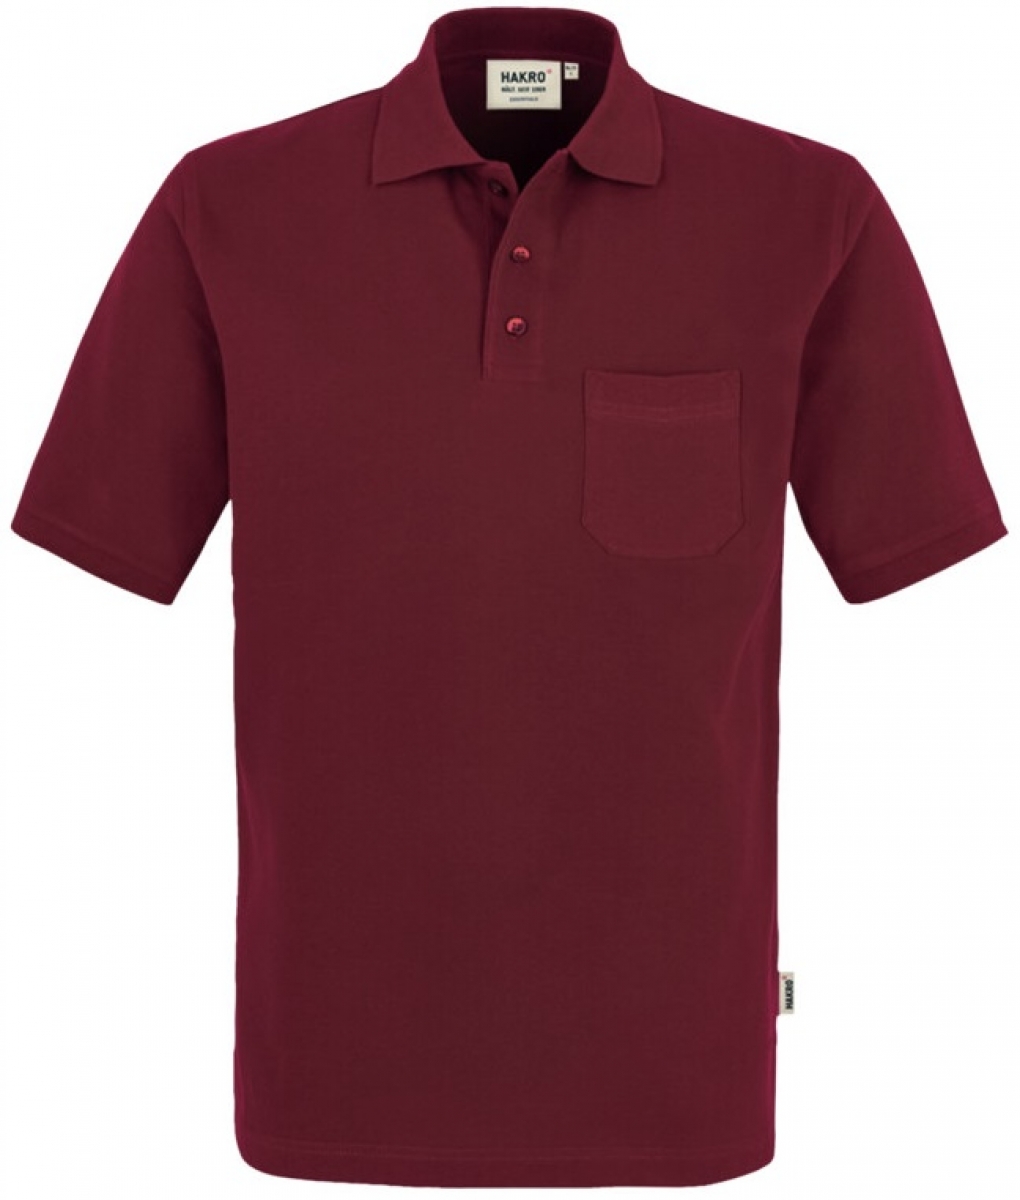 HAKRO-Worker-Shirts, Pocket-Poloshirt Top, weinrot